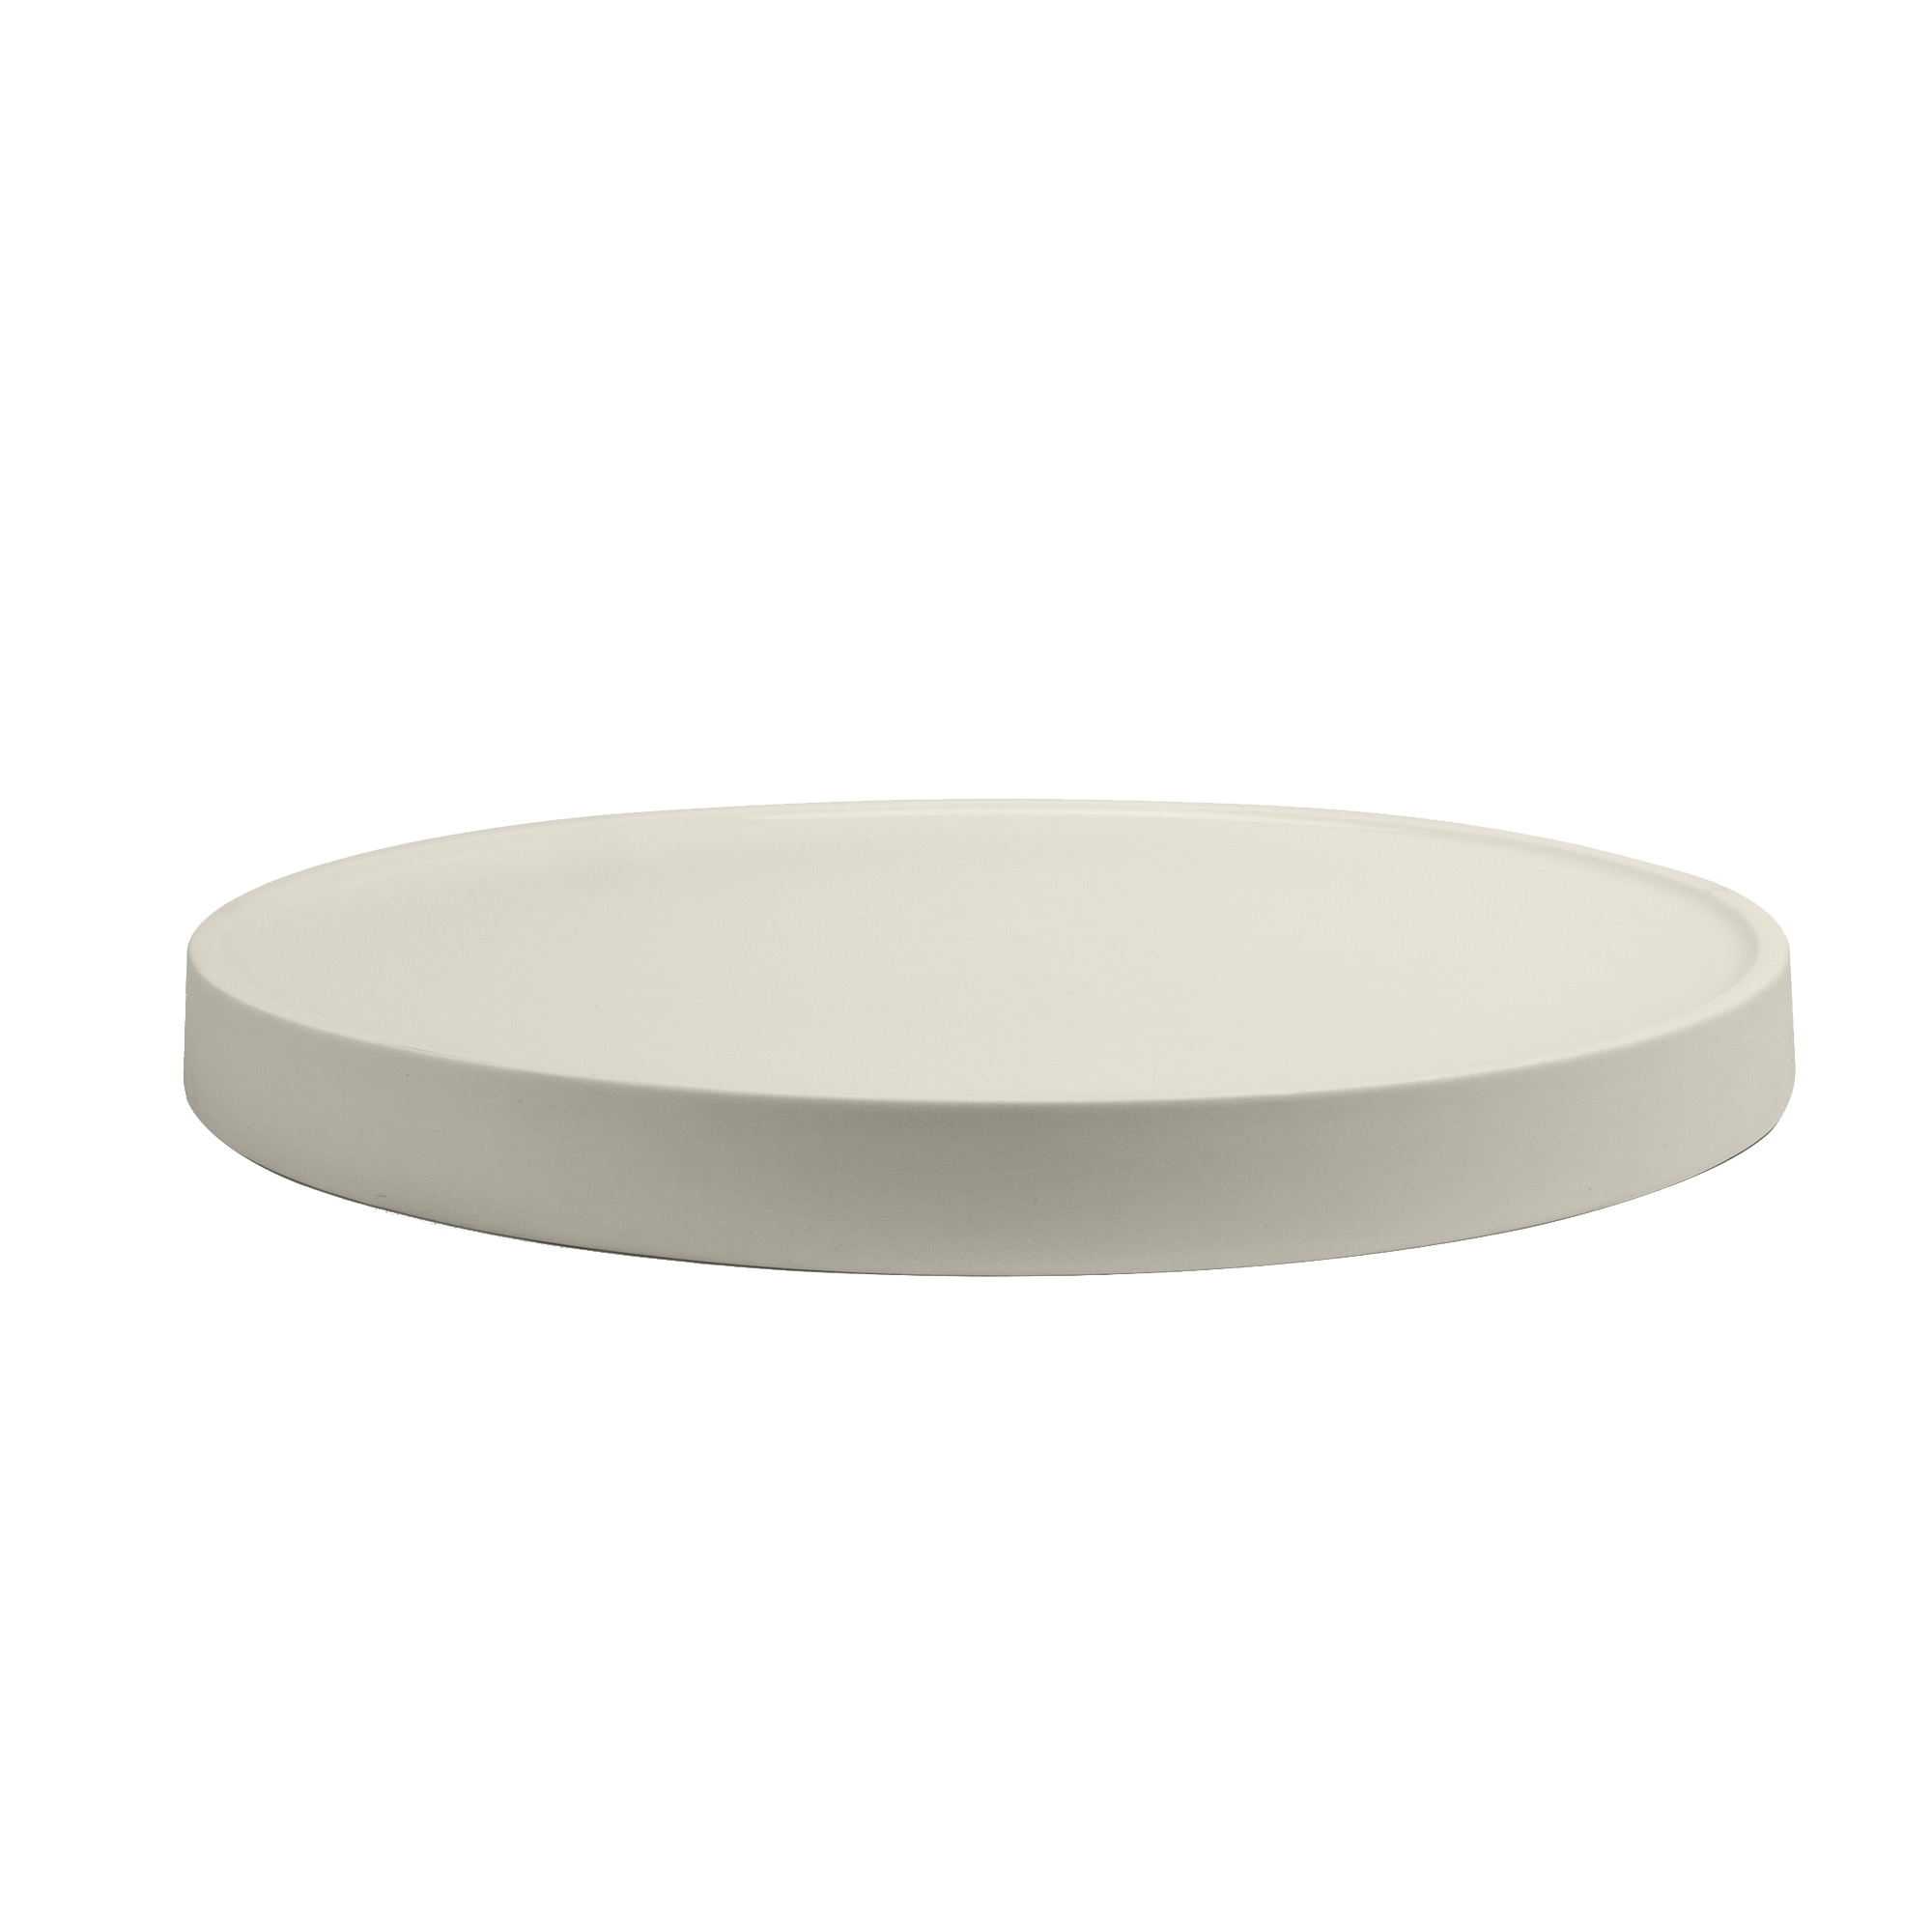 yunic - assiette de service divy porcelaine - blanc/hxø 2,5x28cm